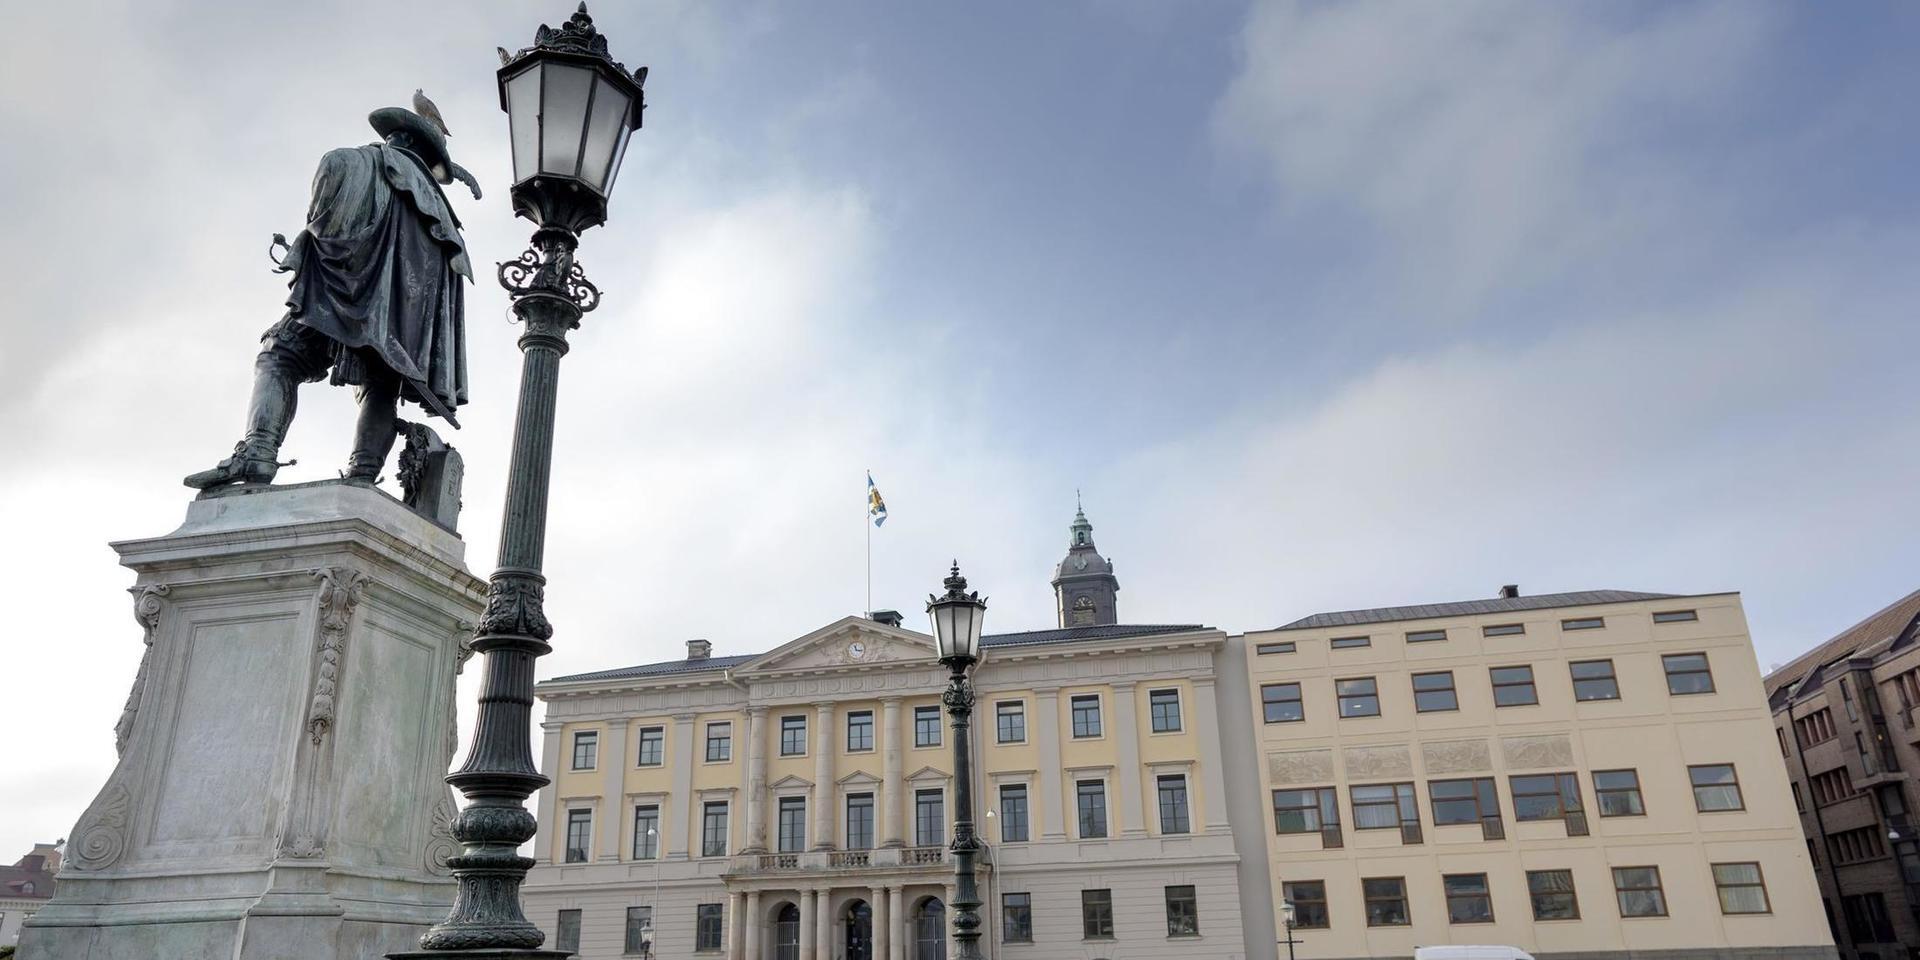 Göteborgs stad kritiseras för att strida mot diskrimineringslagen i hur de vill rekrytera personer till chefspositioner.